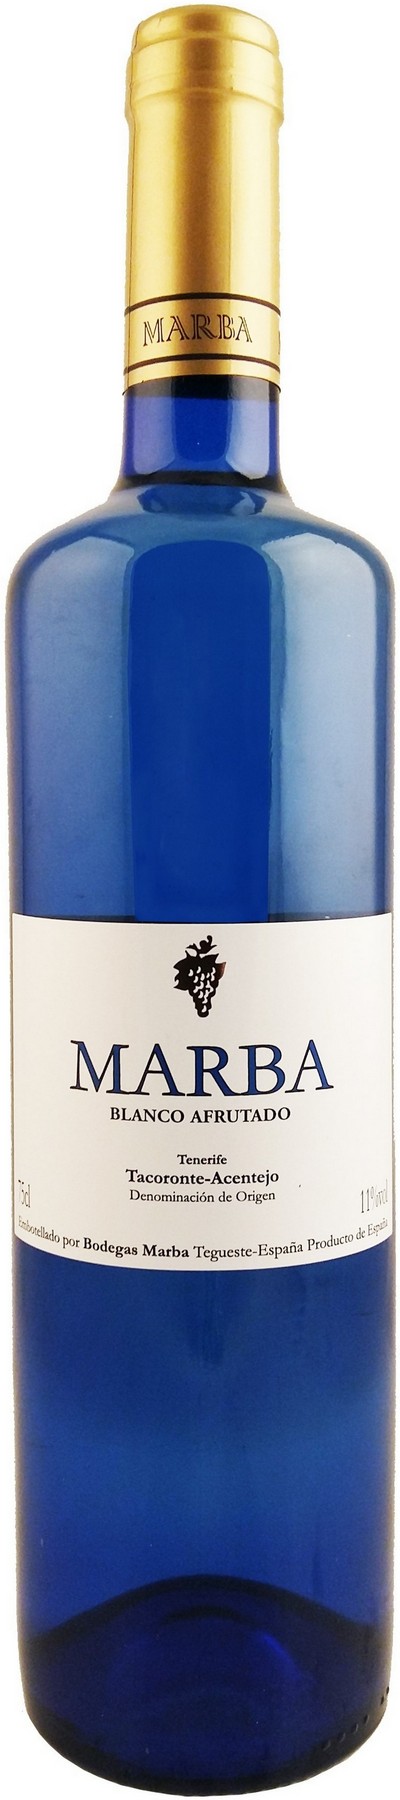 marba-blanco-afrutado-2021